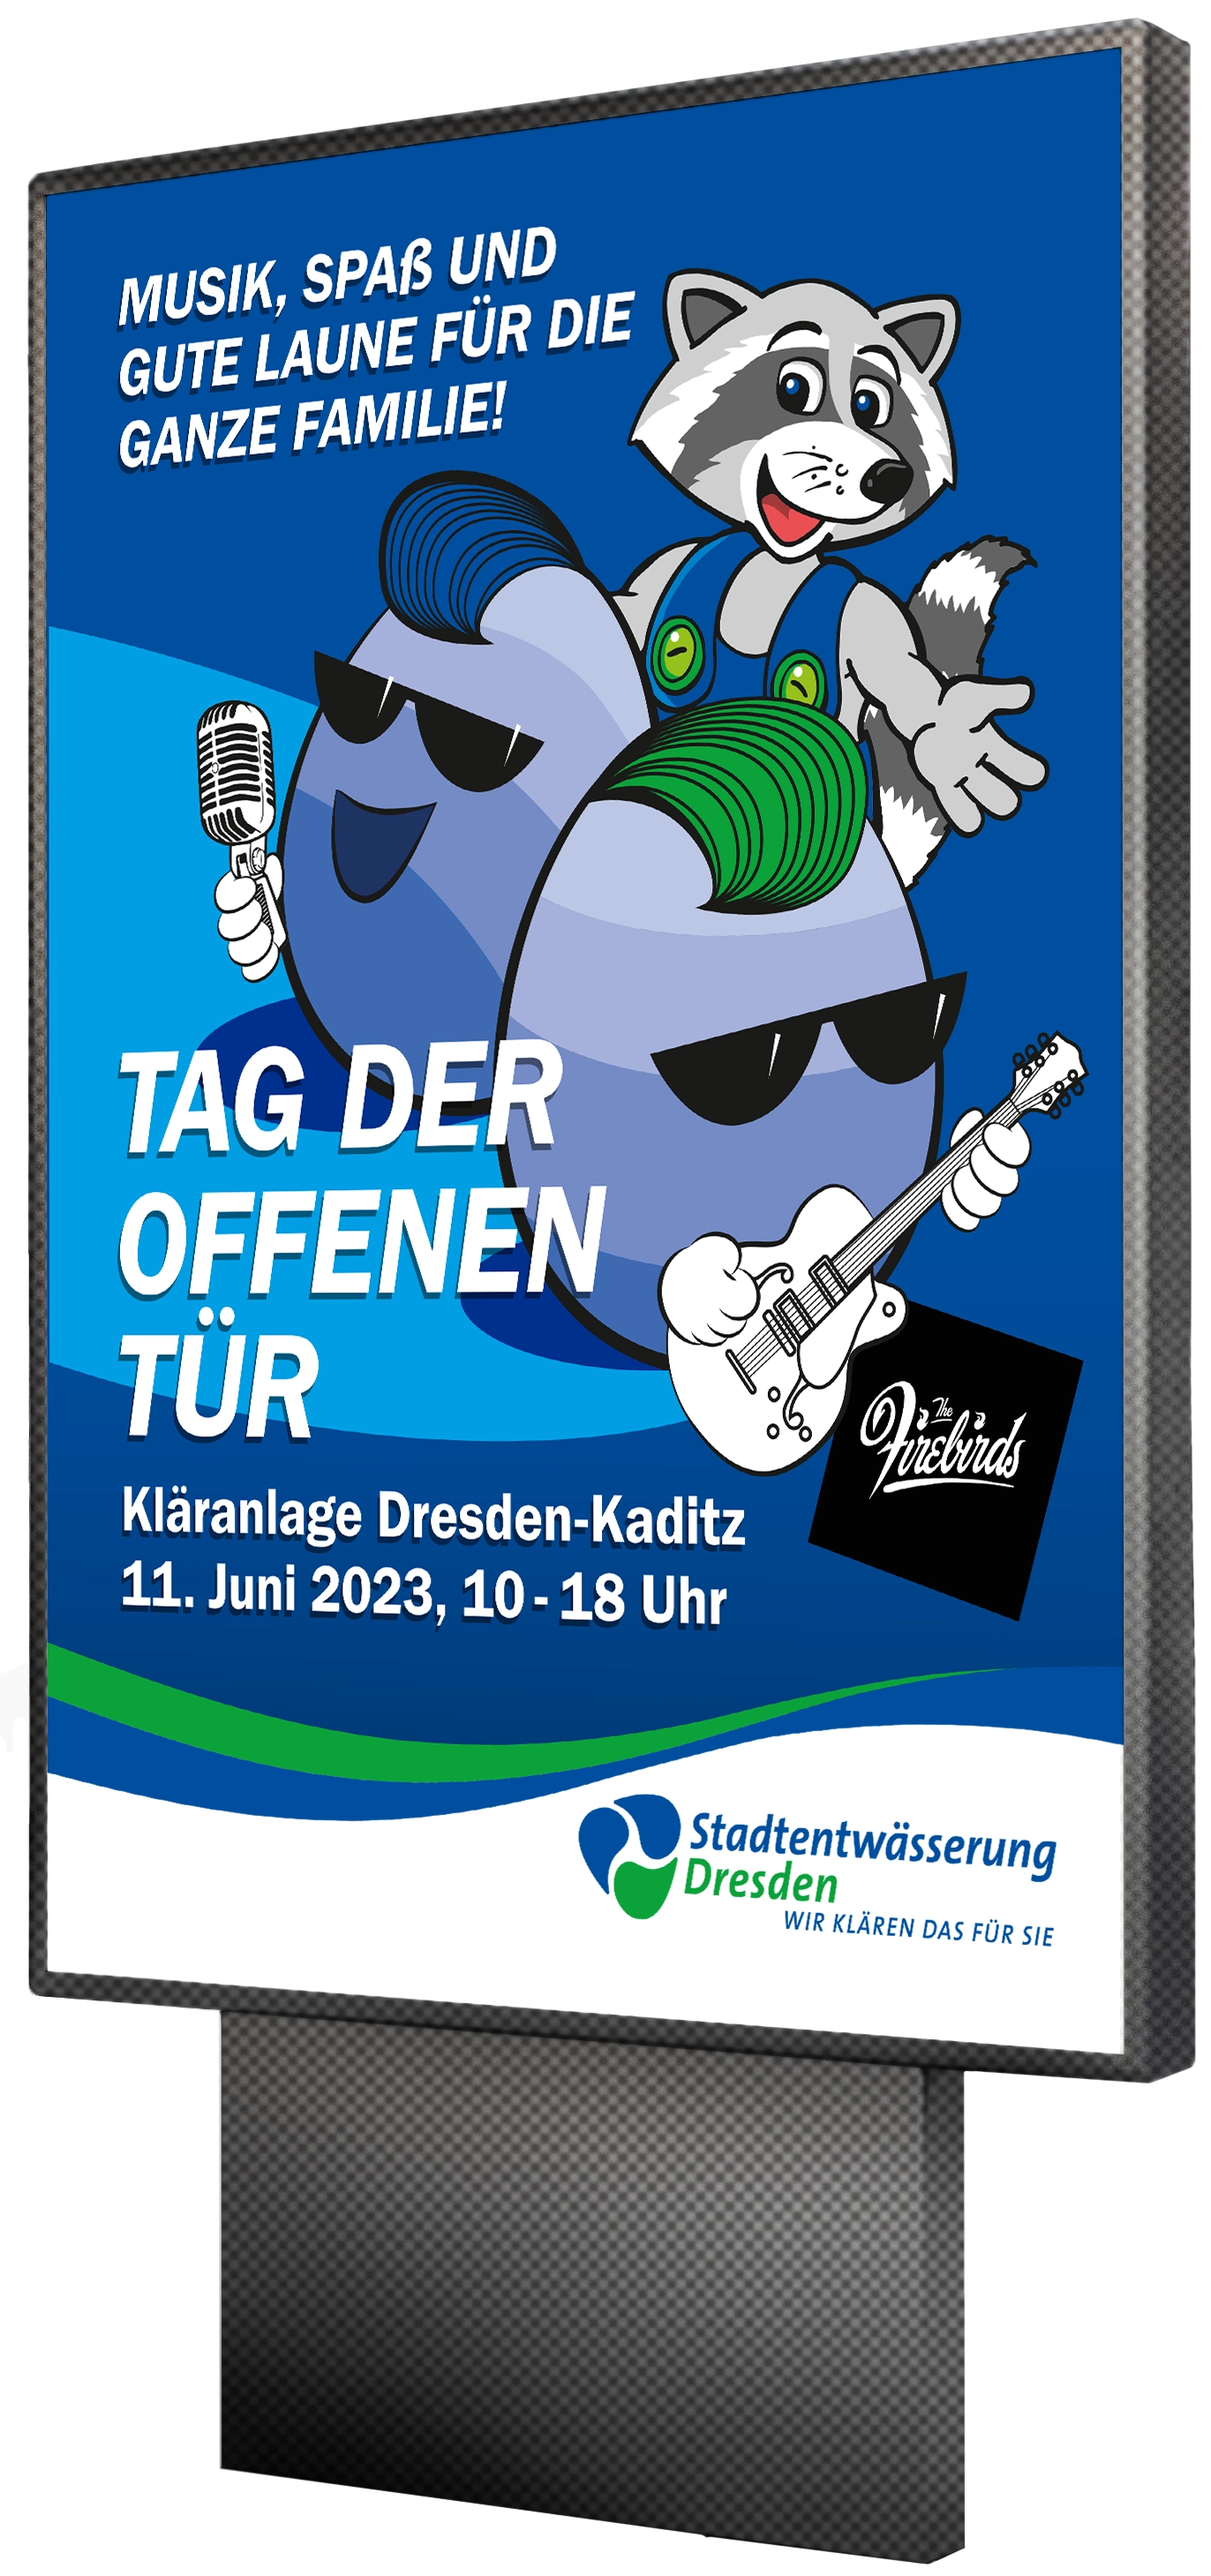 Plakat mit neuer Kamapgne der Stadtentwaesserung Dresden